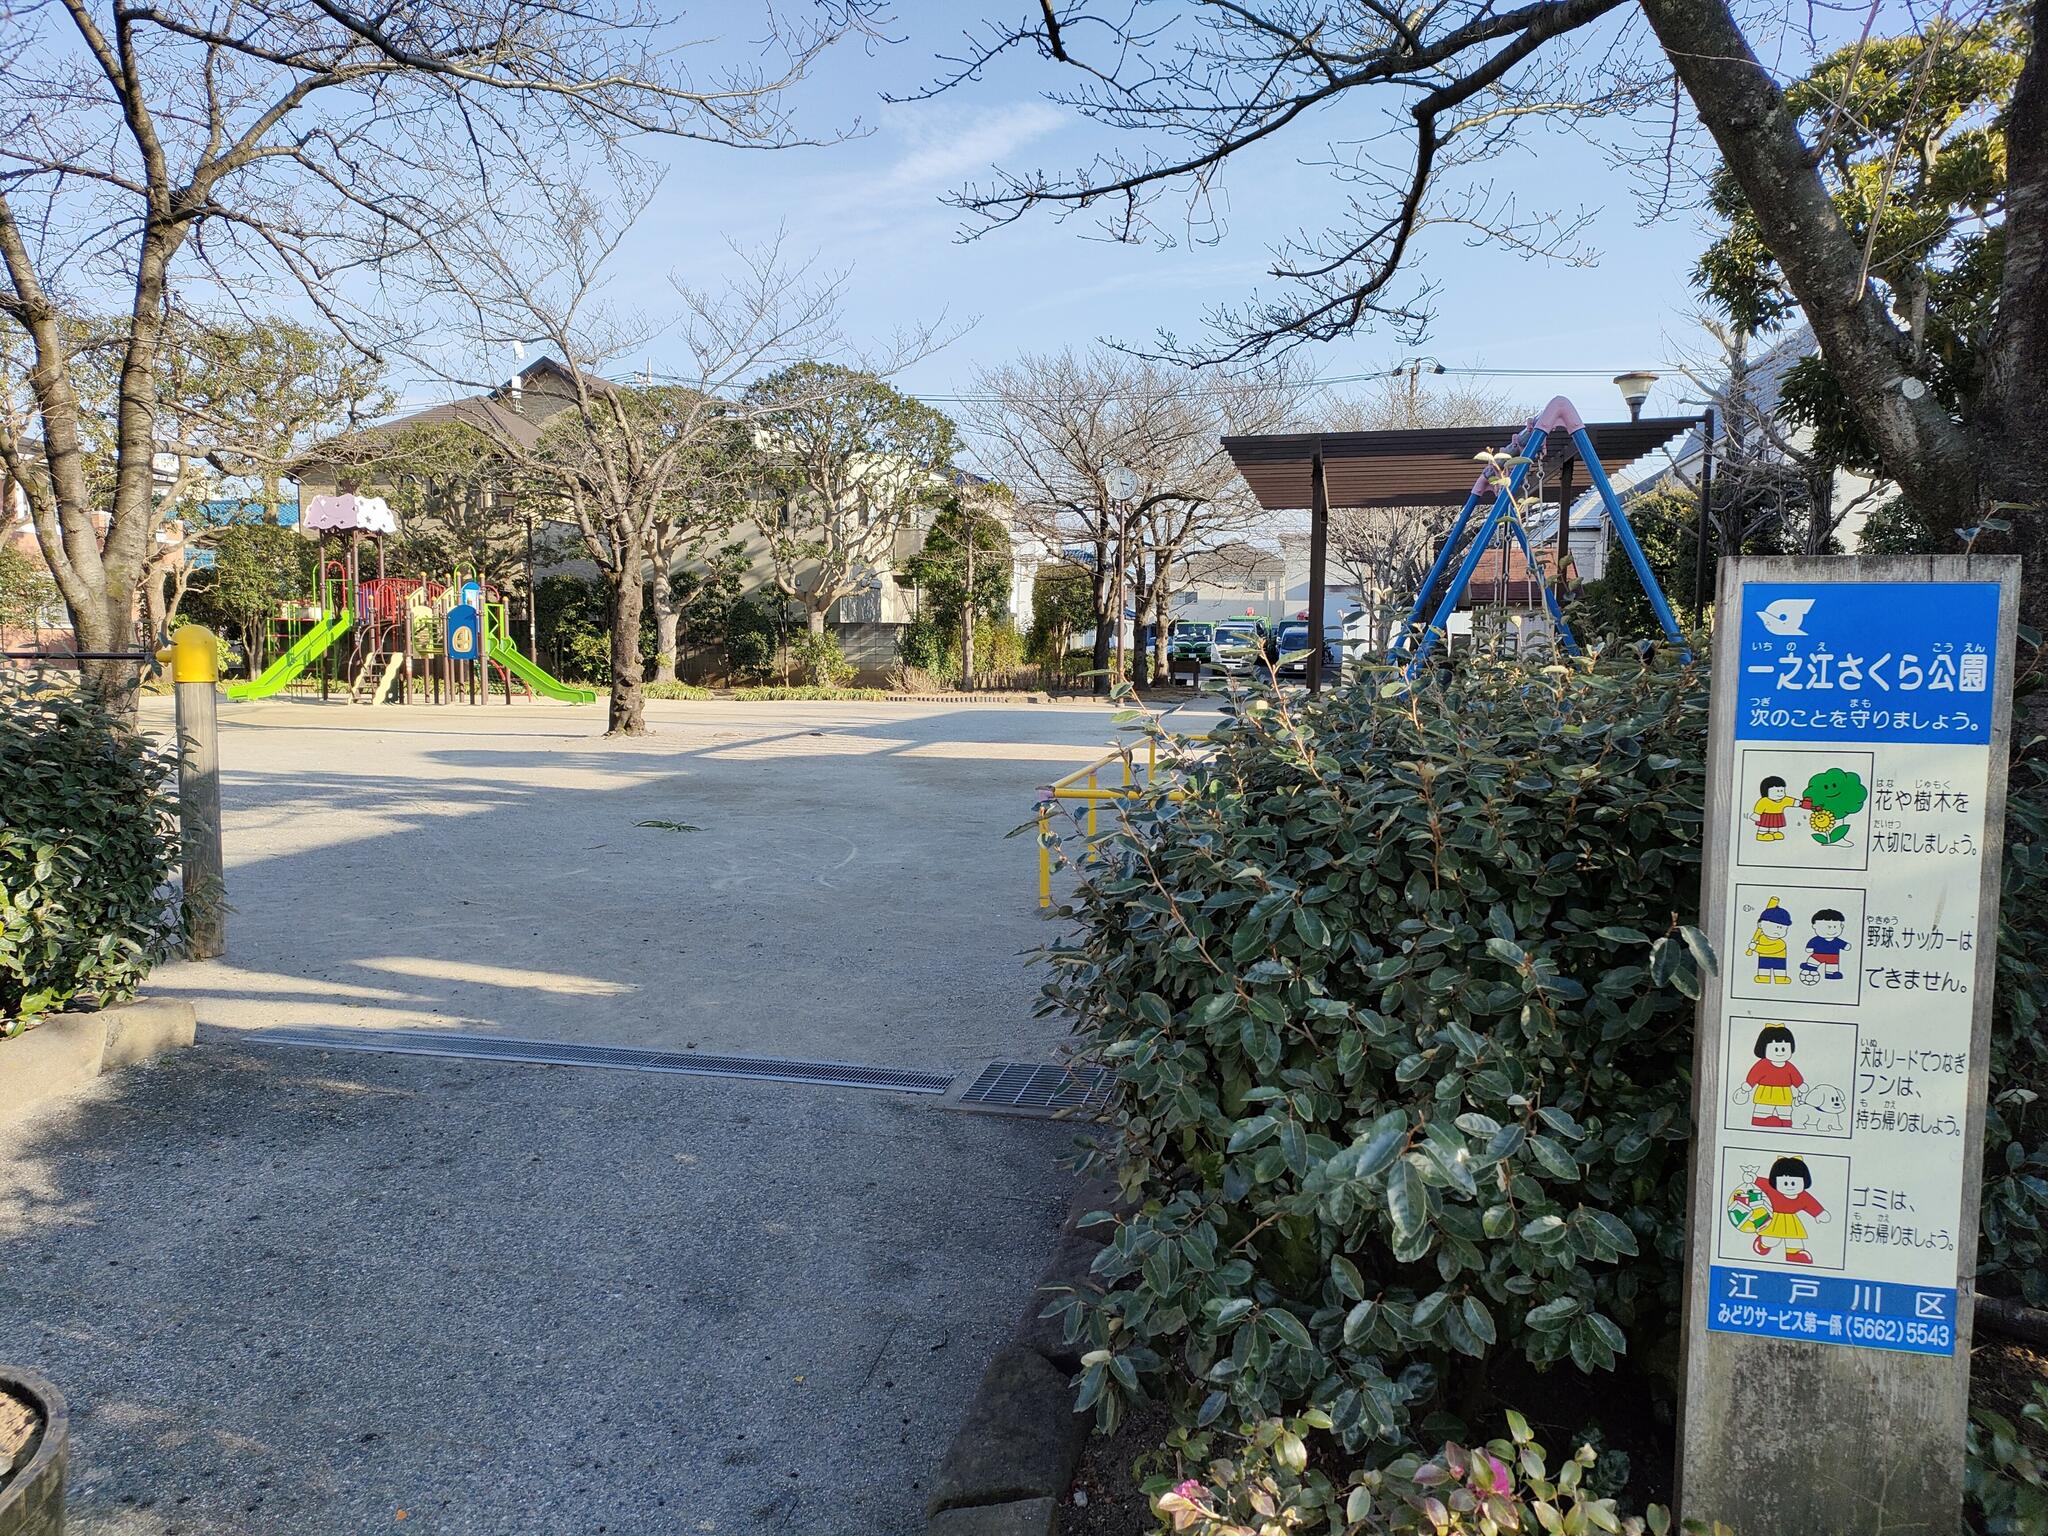 一之江さくら公園 - 江戸川区一之江/公園 | Yahoo!マップ